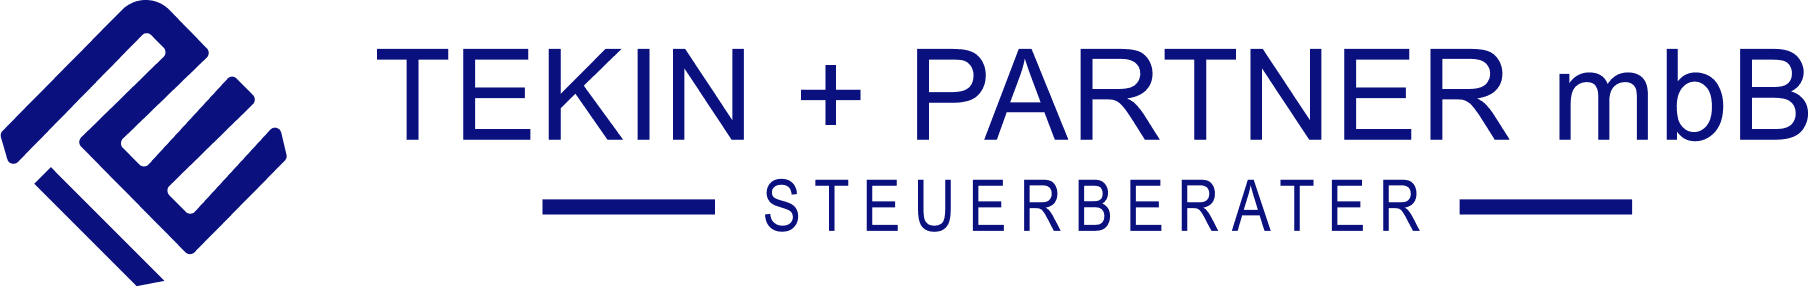 Logo des Partner Tekin + Partner